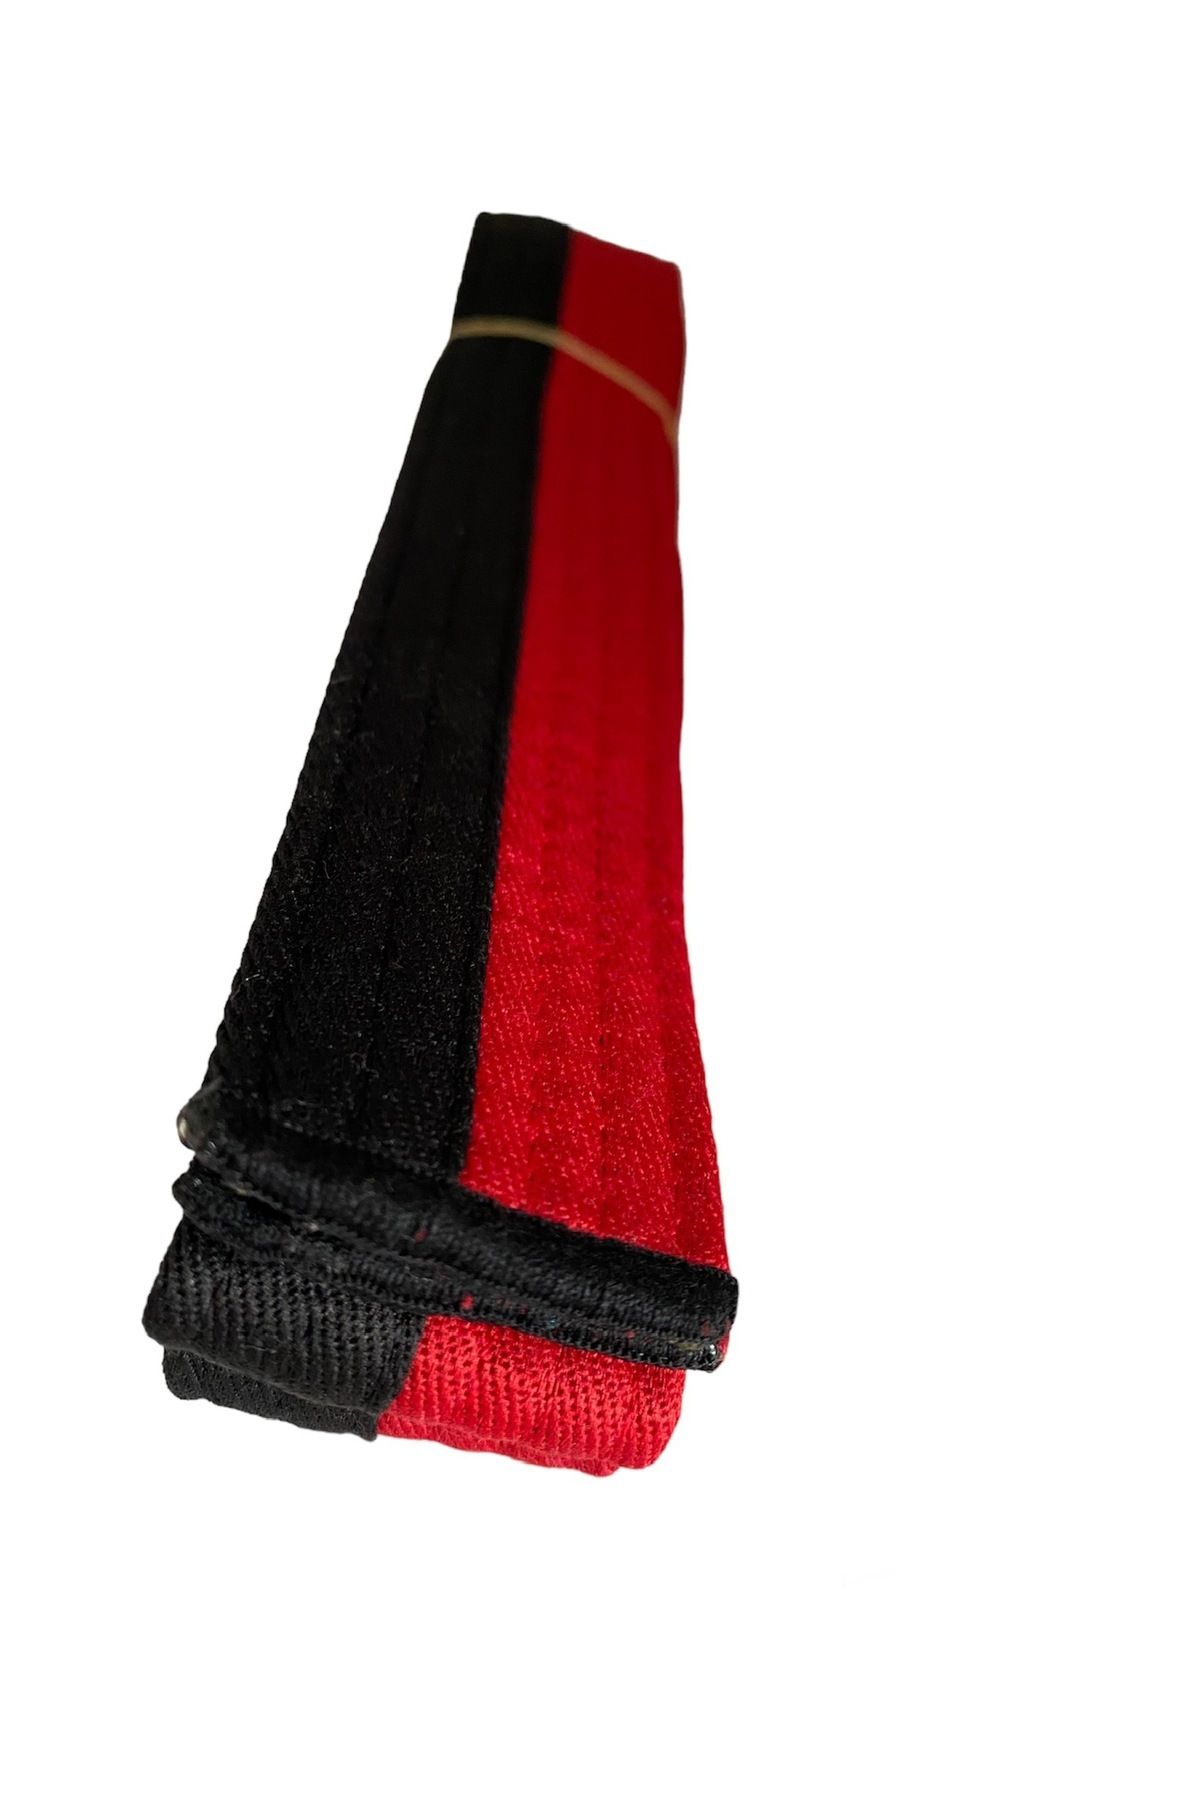 REFLEKS SPOR Refleks Taekwondo Kırmızı Siyah Kuşak & Tekvando Kırmızı Siyah Kuşak